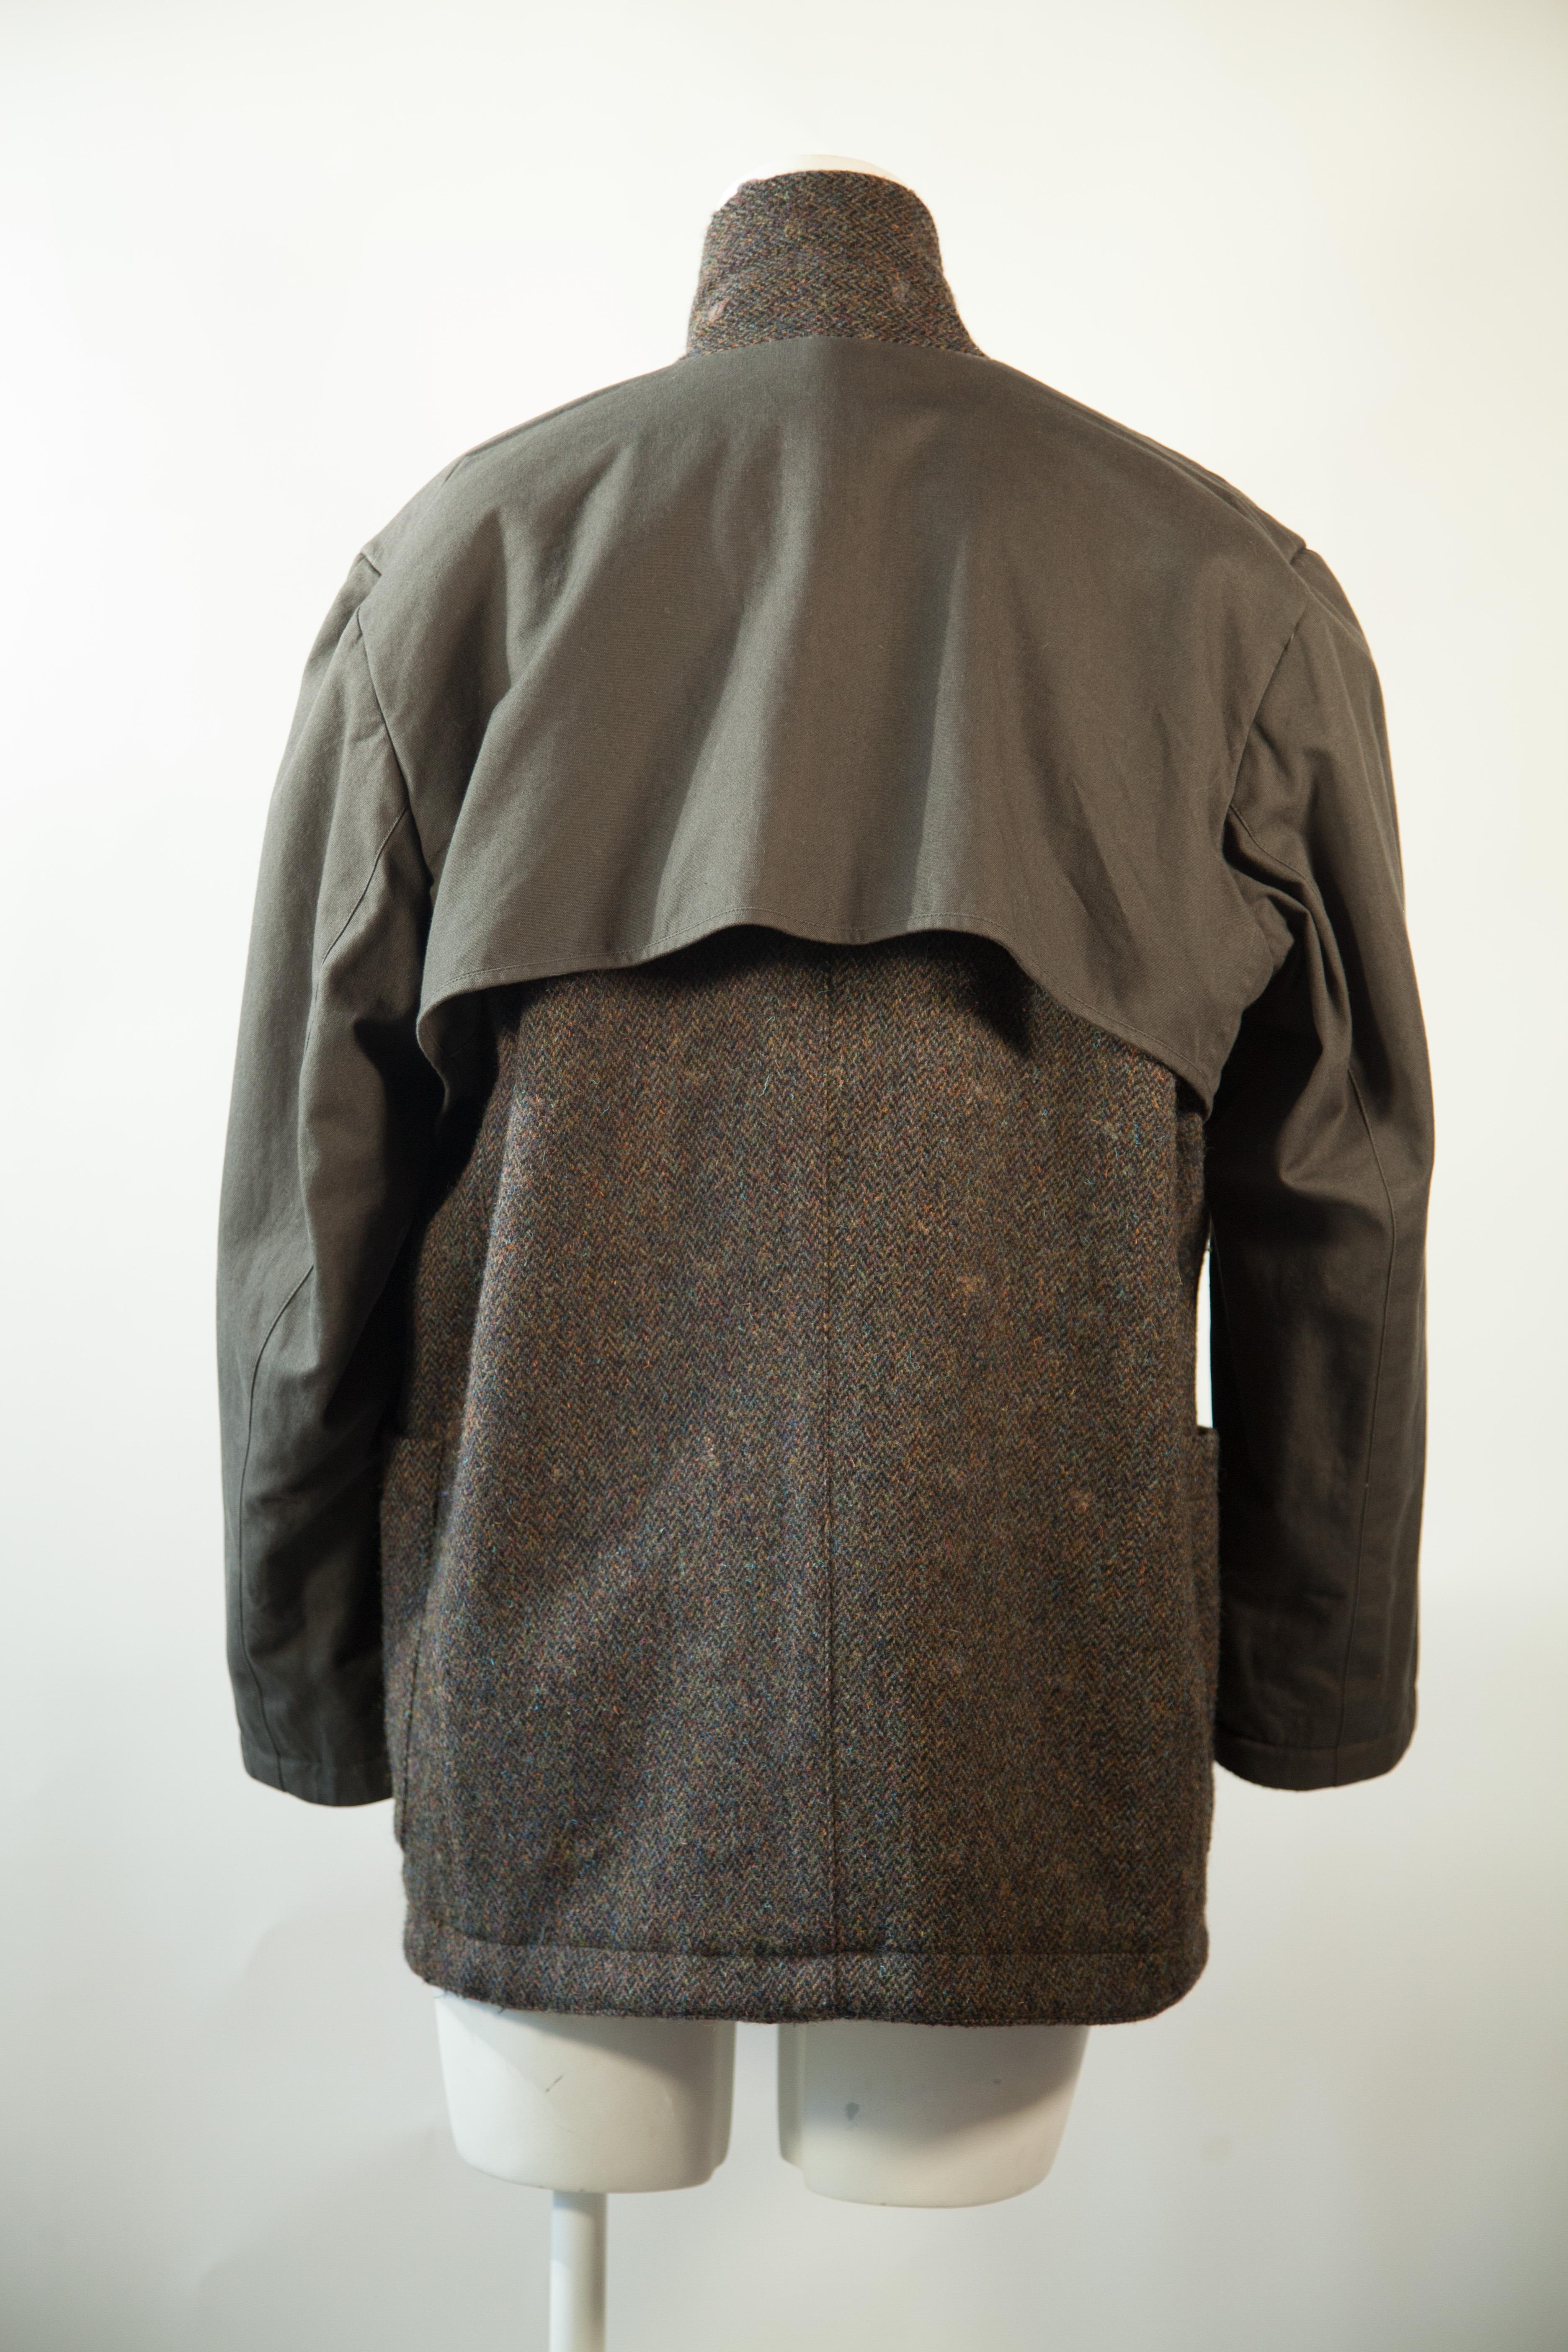 Issey Miyake, Rare, Reversible, Wool, Tweed Jacket, 1970s For Sale 3